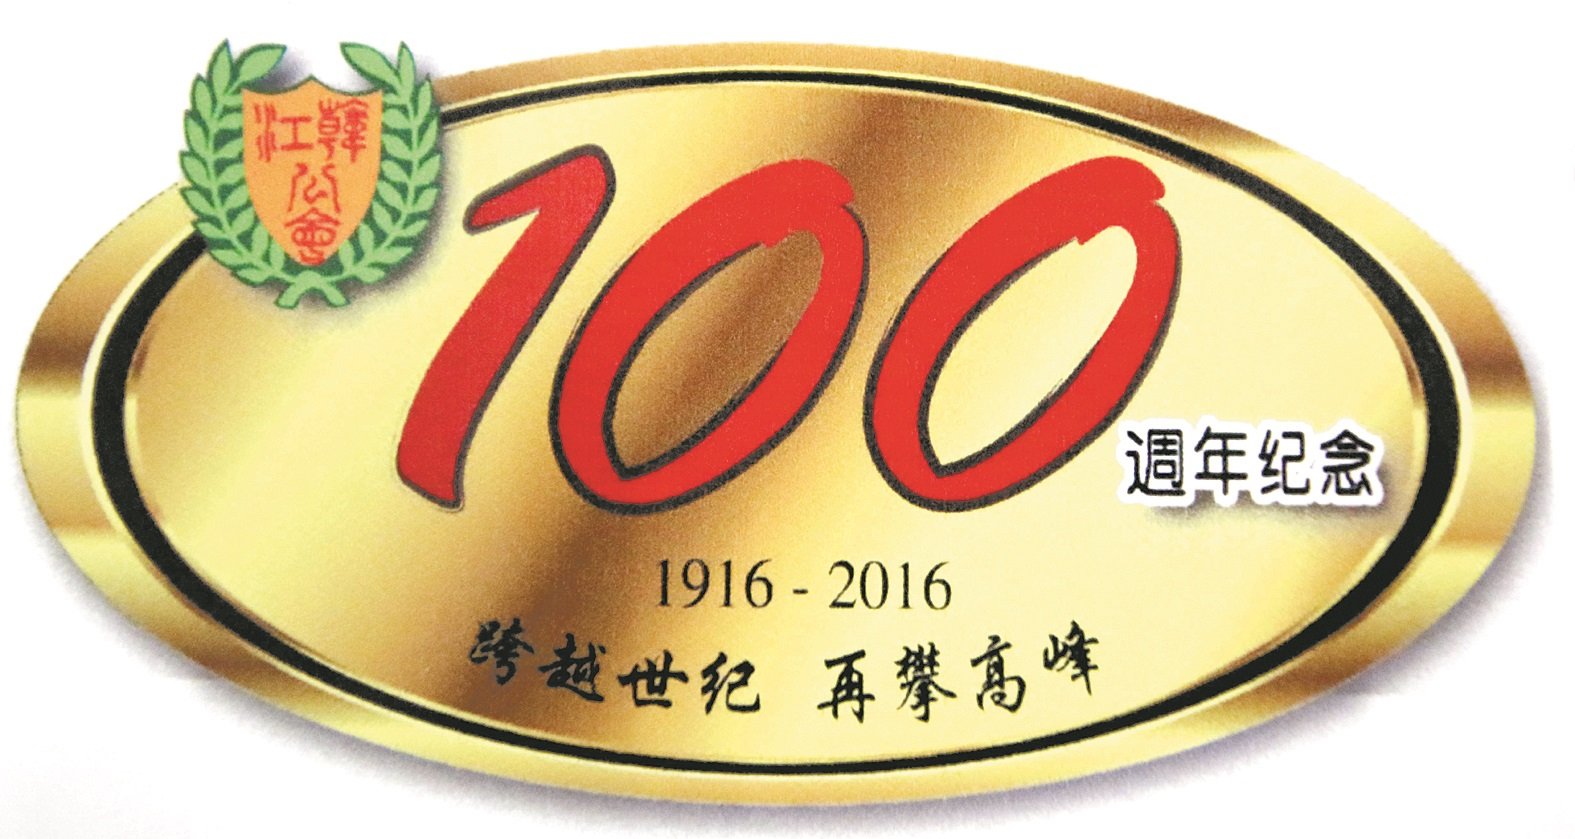 配合百年会庆及承办马潮联周年纪念活动及代表大会，霹雳韩江公会特绘制百年会庆徽标。